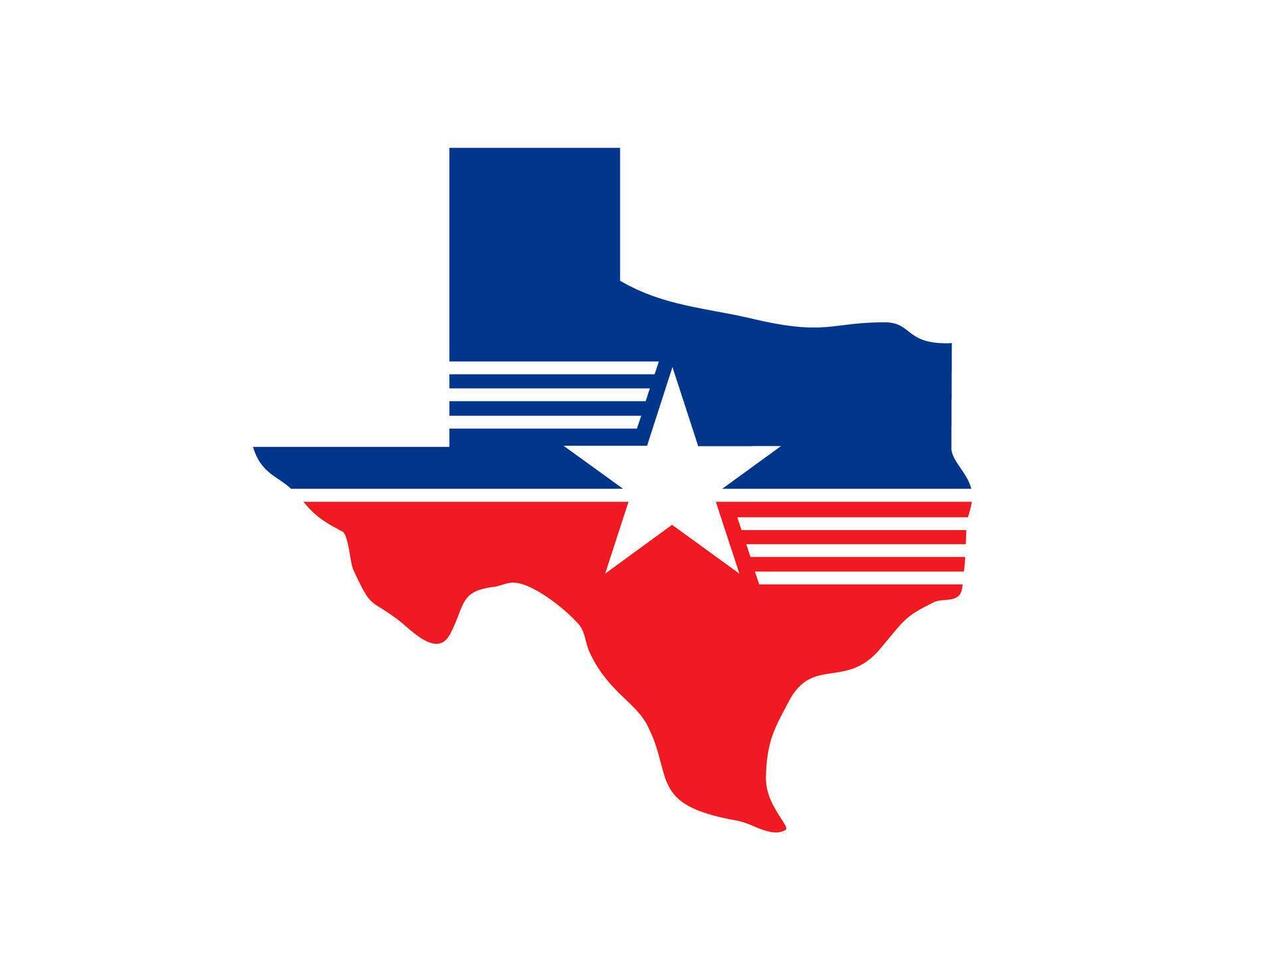 Texas staat symbool, kaart icoon, Kenmerken een eenzaam ster vector